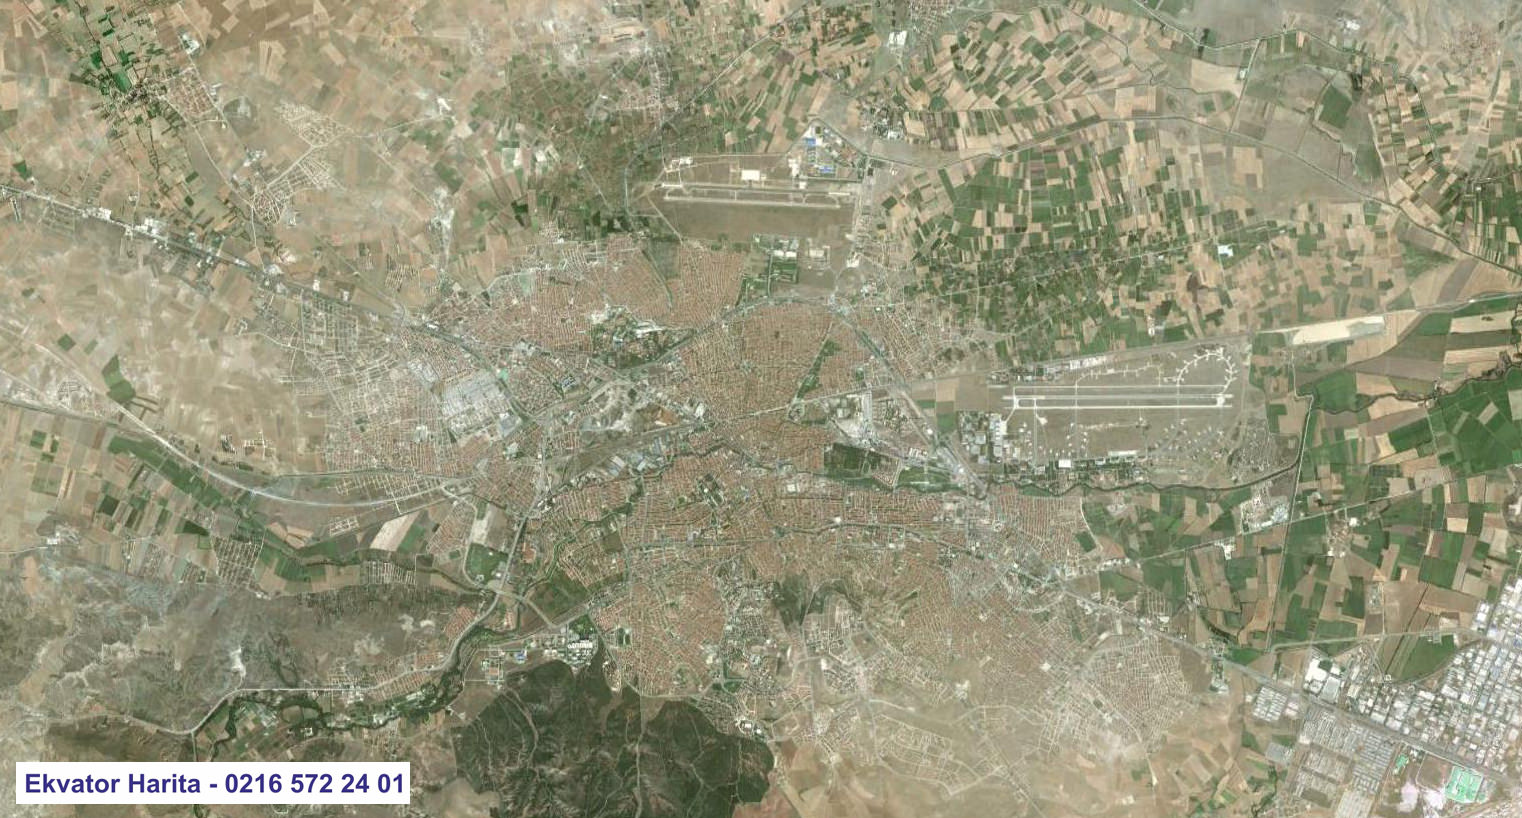 Eskişehir Uydu Haritası Örnek Fotoğrafı